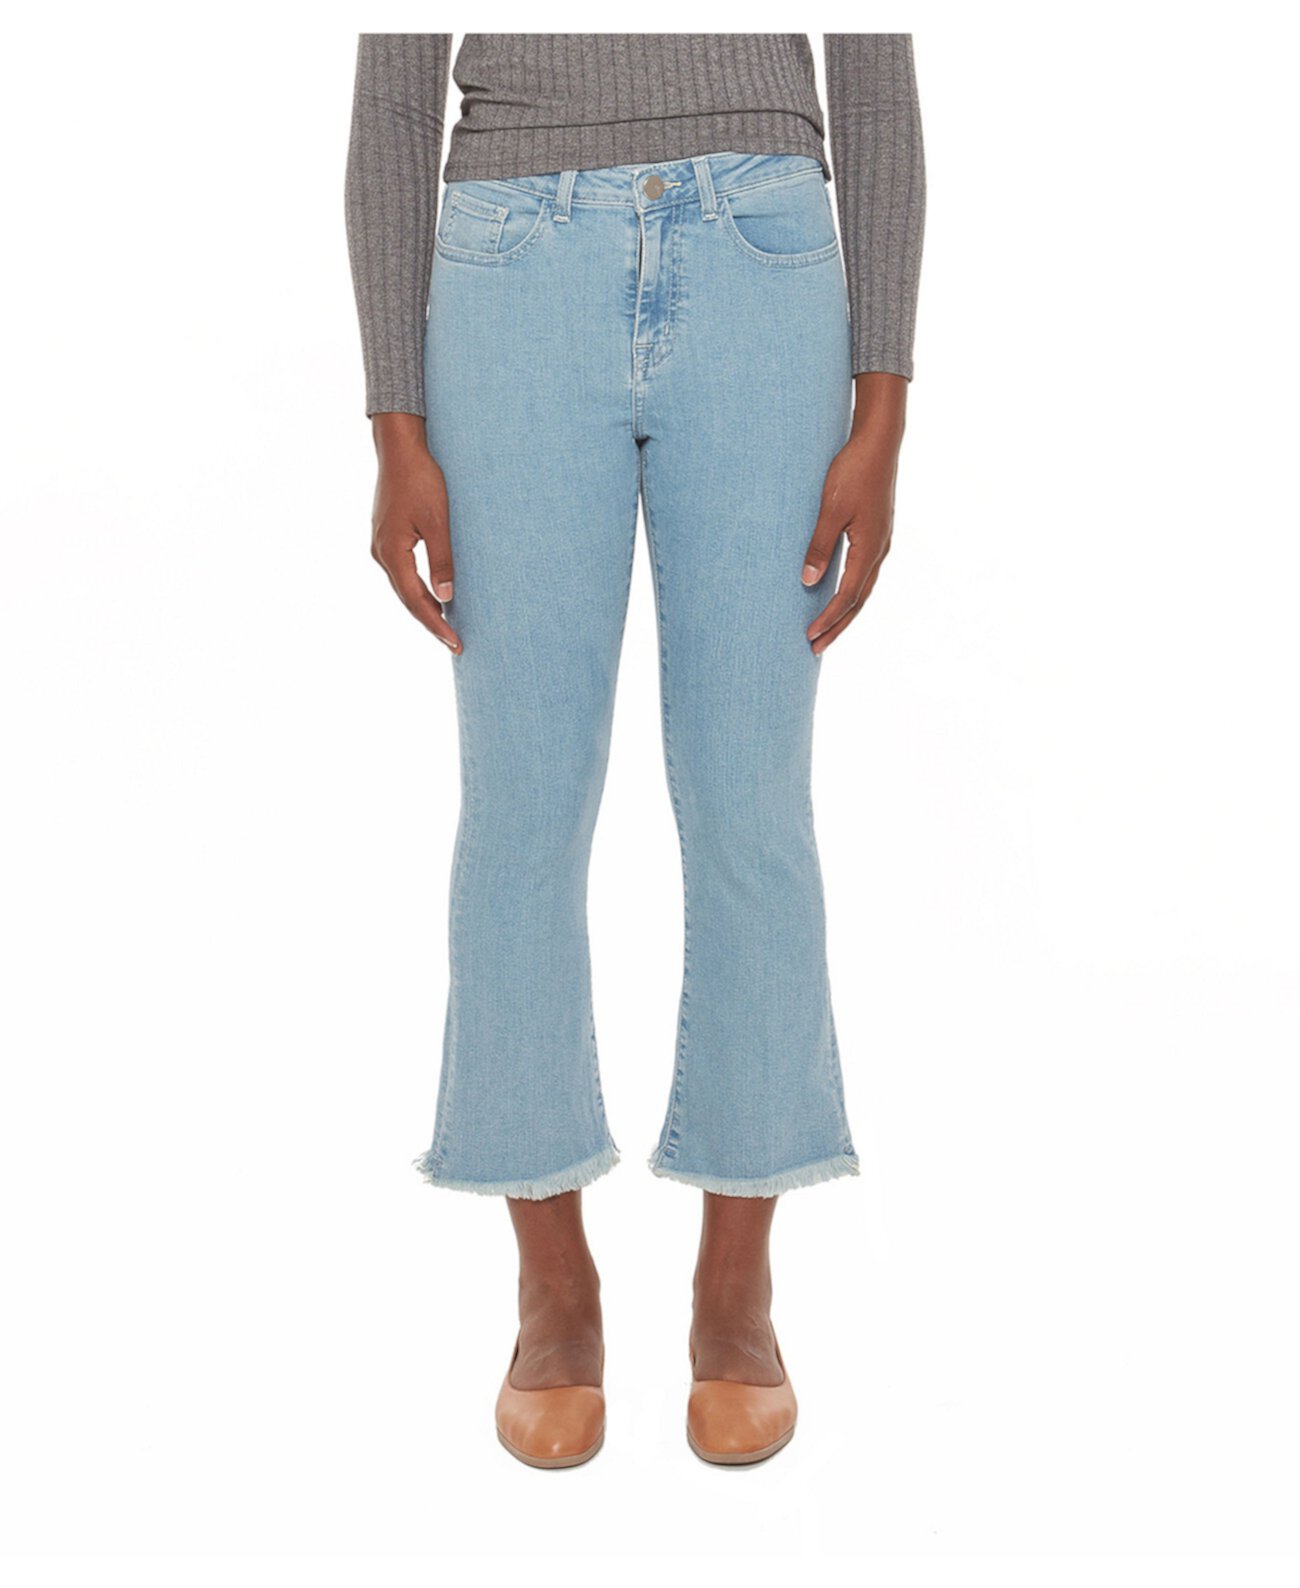 Женские джинсы Bootcut со средней посадкой Lola Jeans